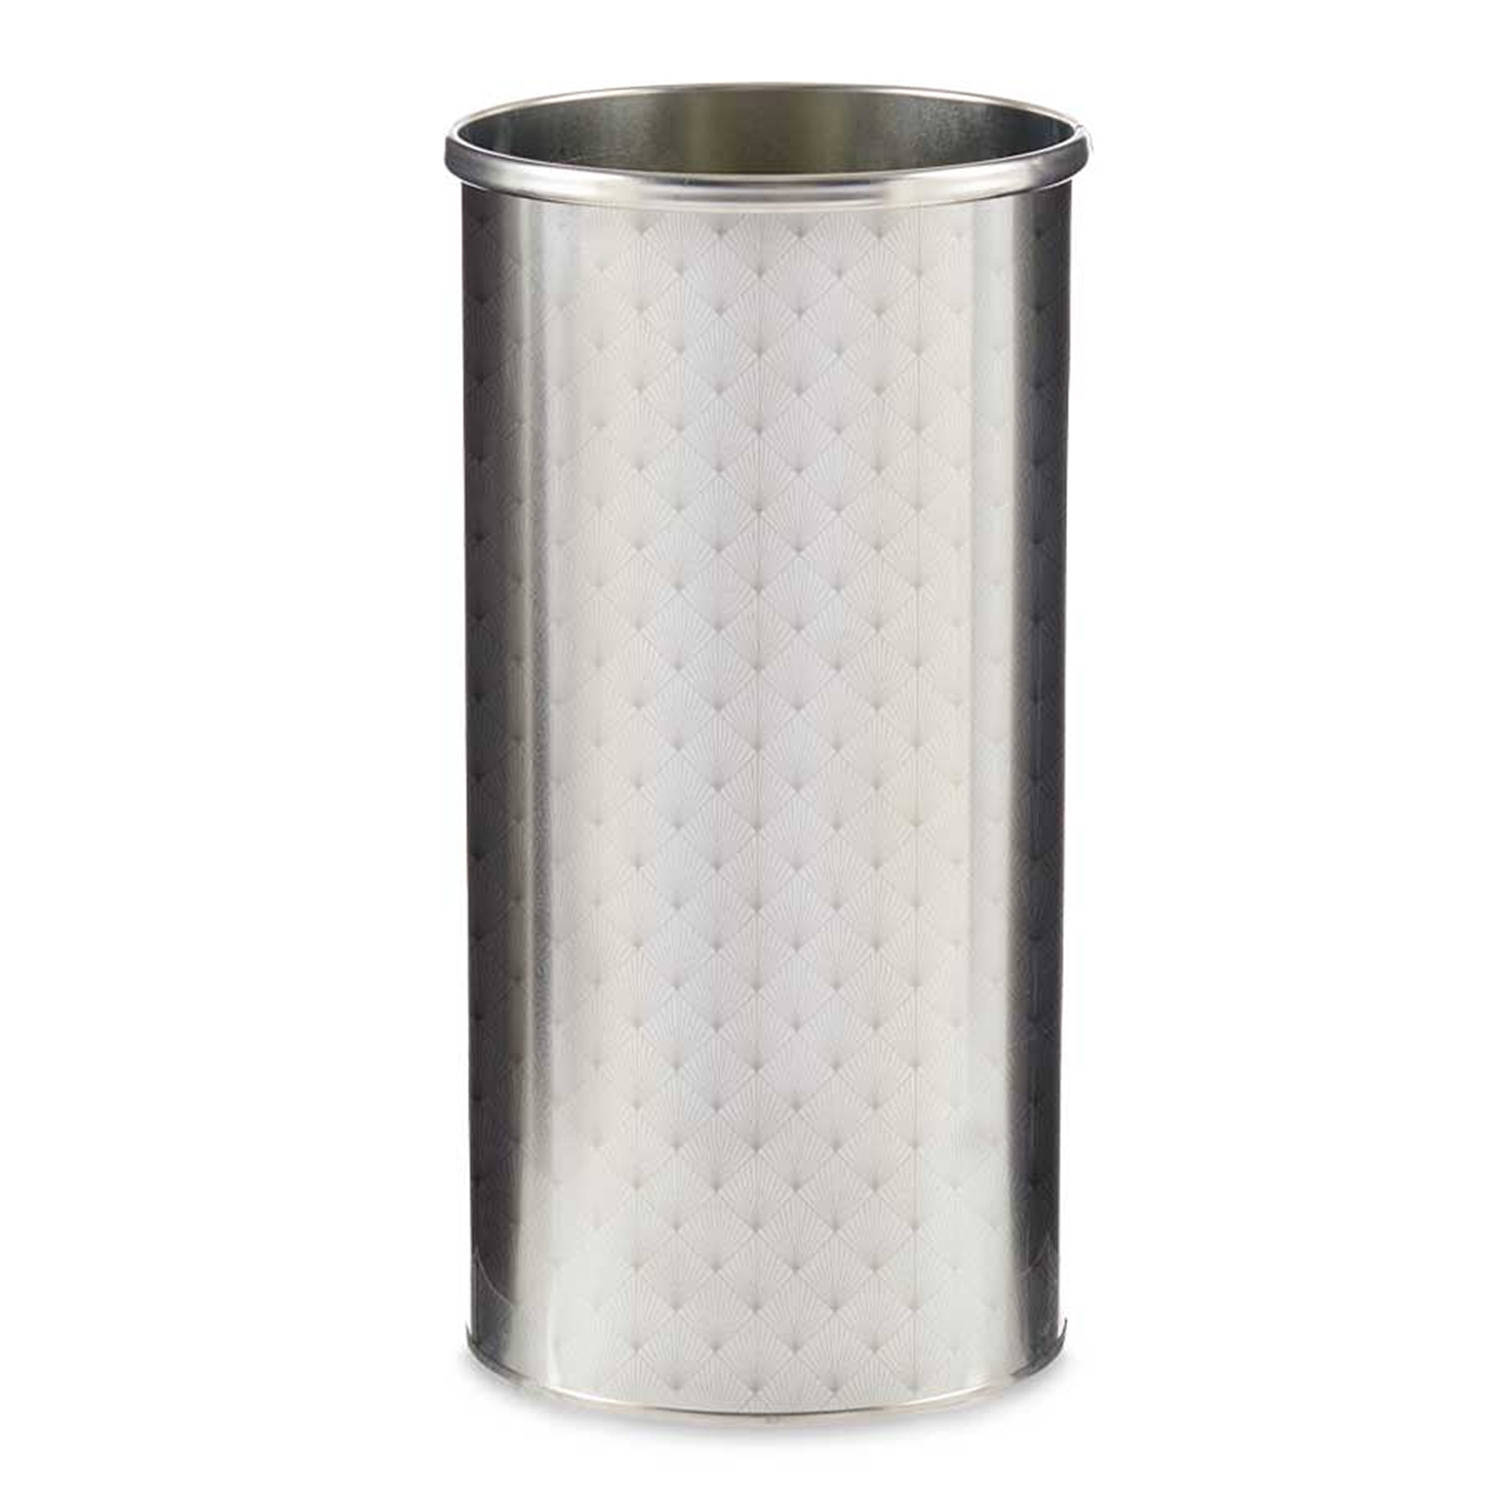 Giftdecor - Paraplu houder/bak/standaard - metaal zilver - 22 x 44 cm